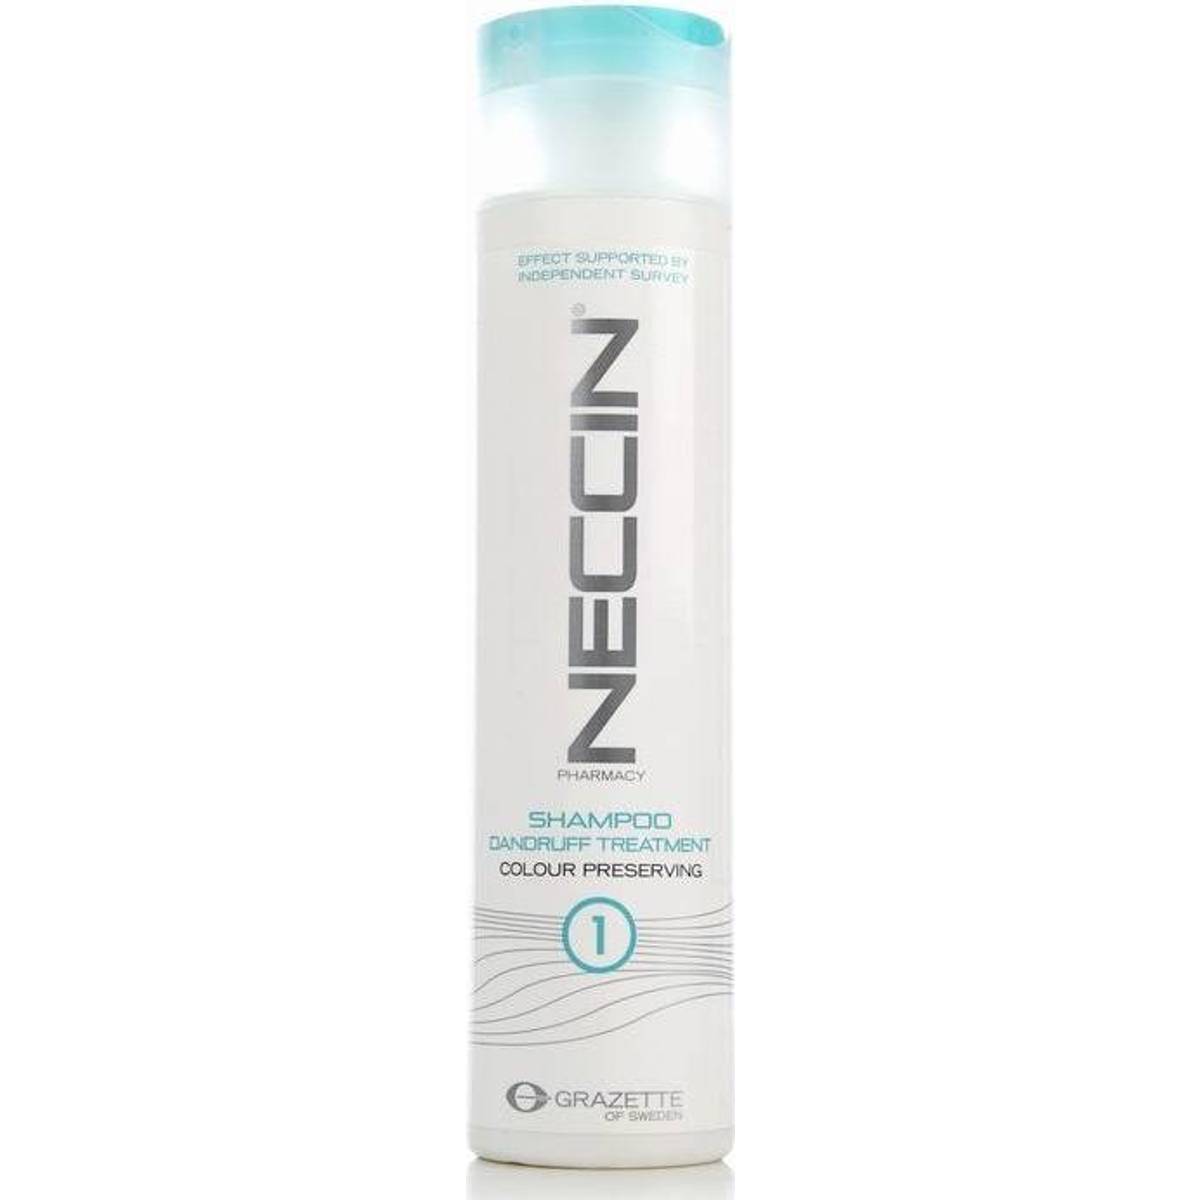 Neccin shampoo • Find den billigste pris hos PriceRunner nu »